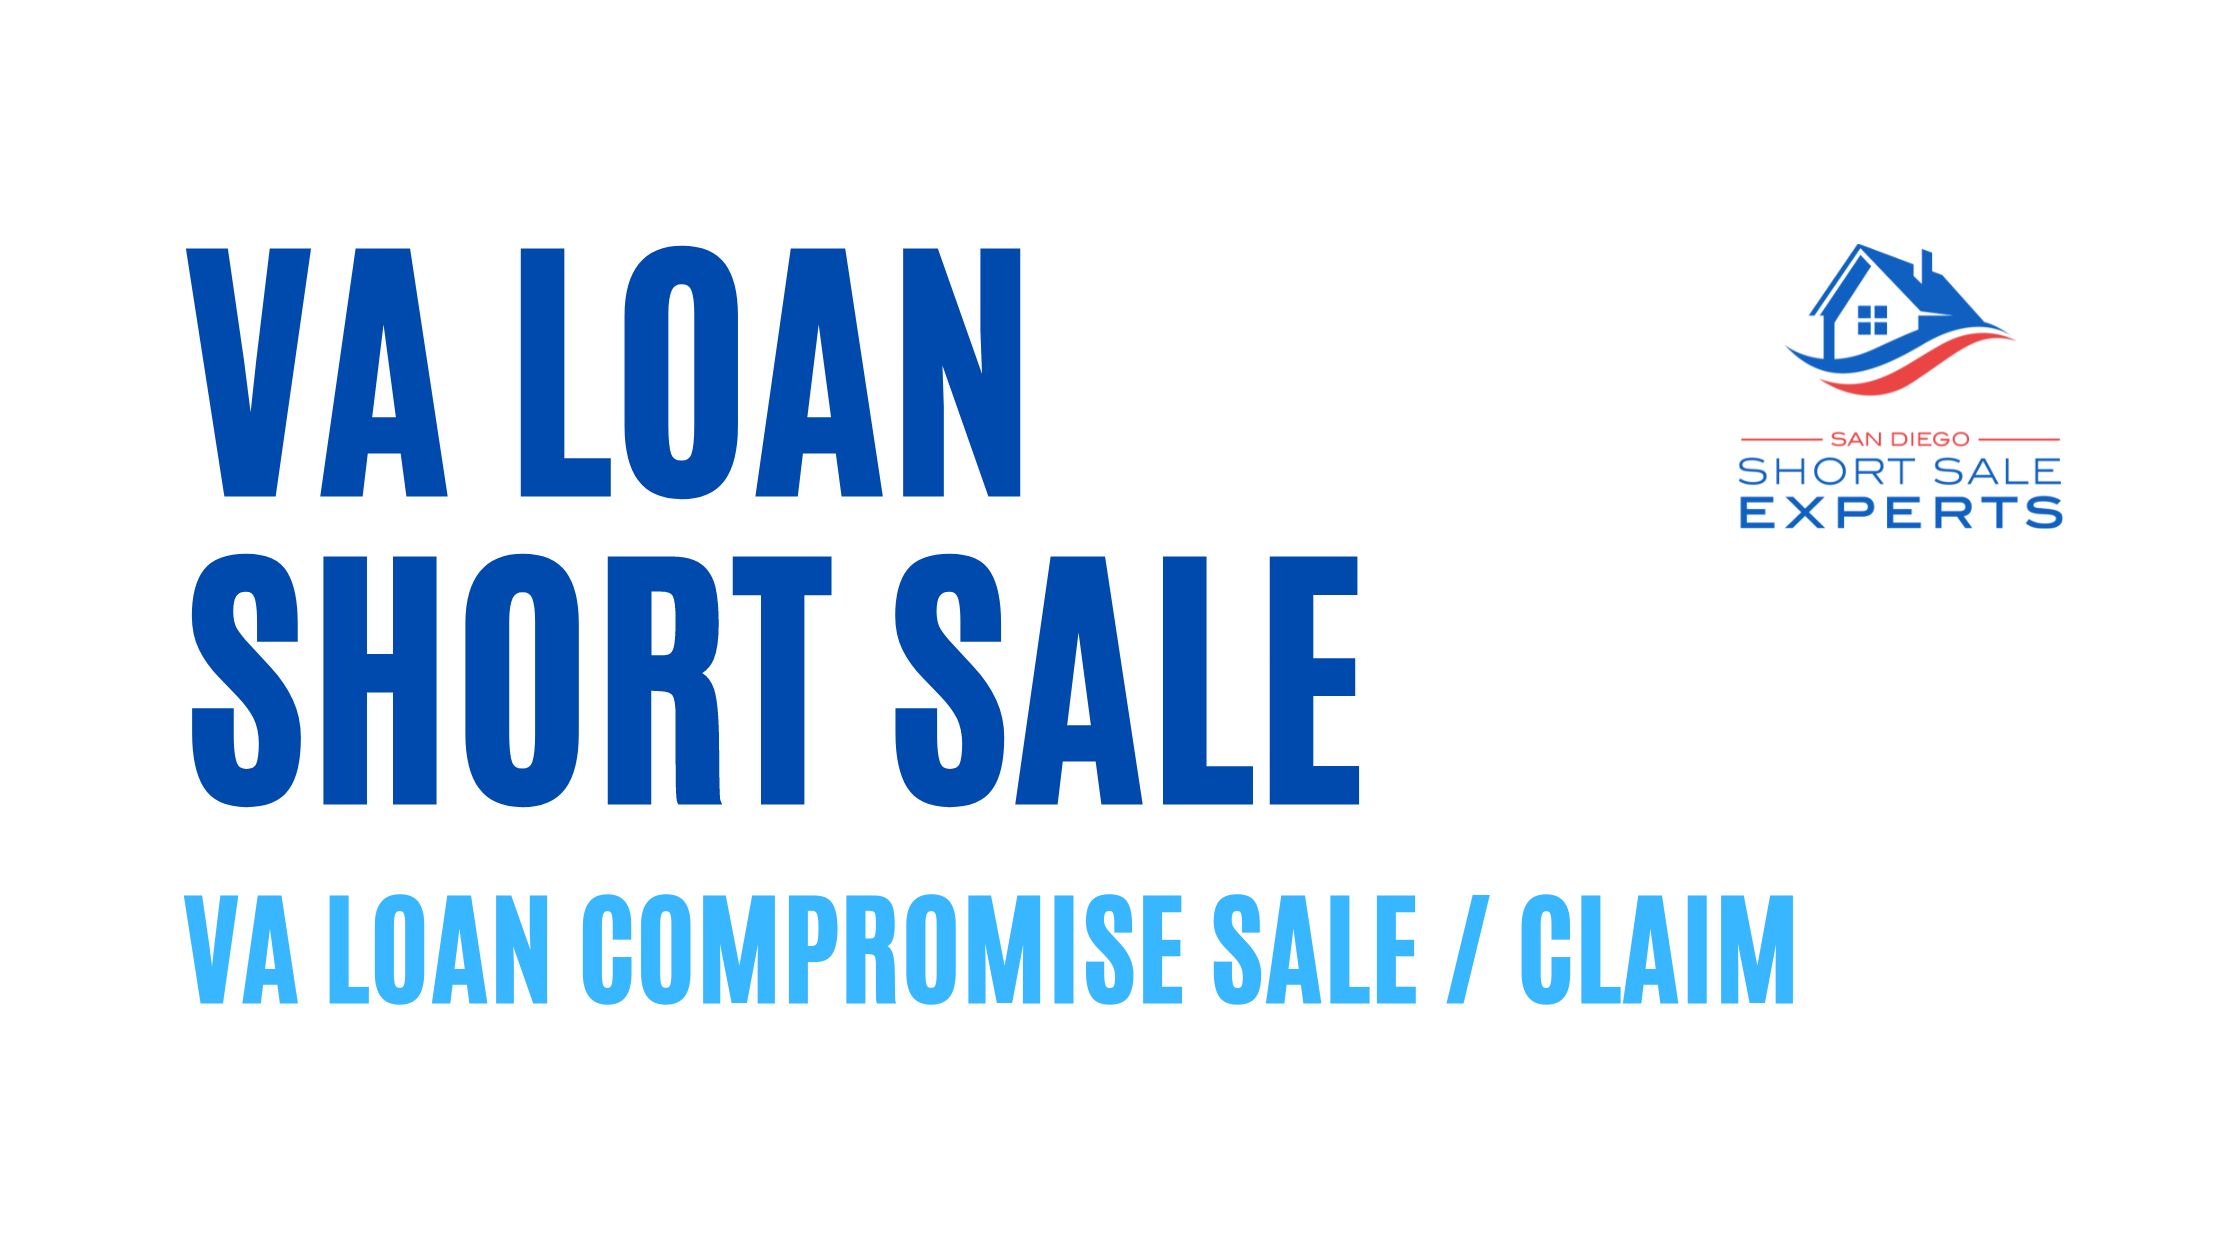 VA Loan Short Sale aka VA Compromise Sale